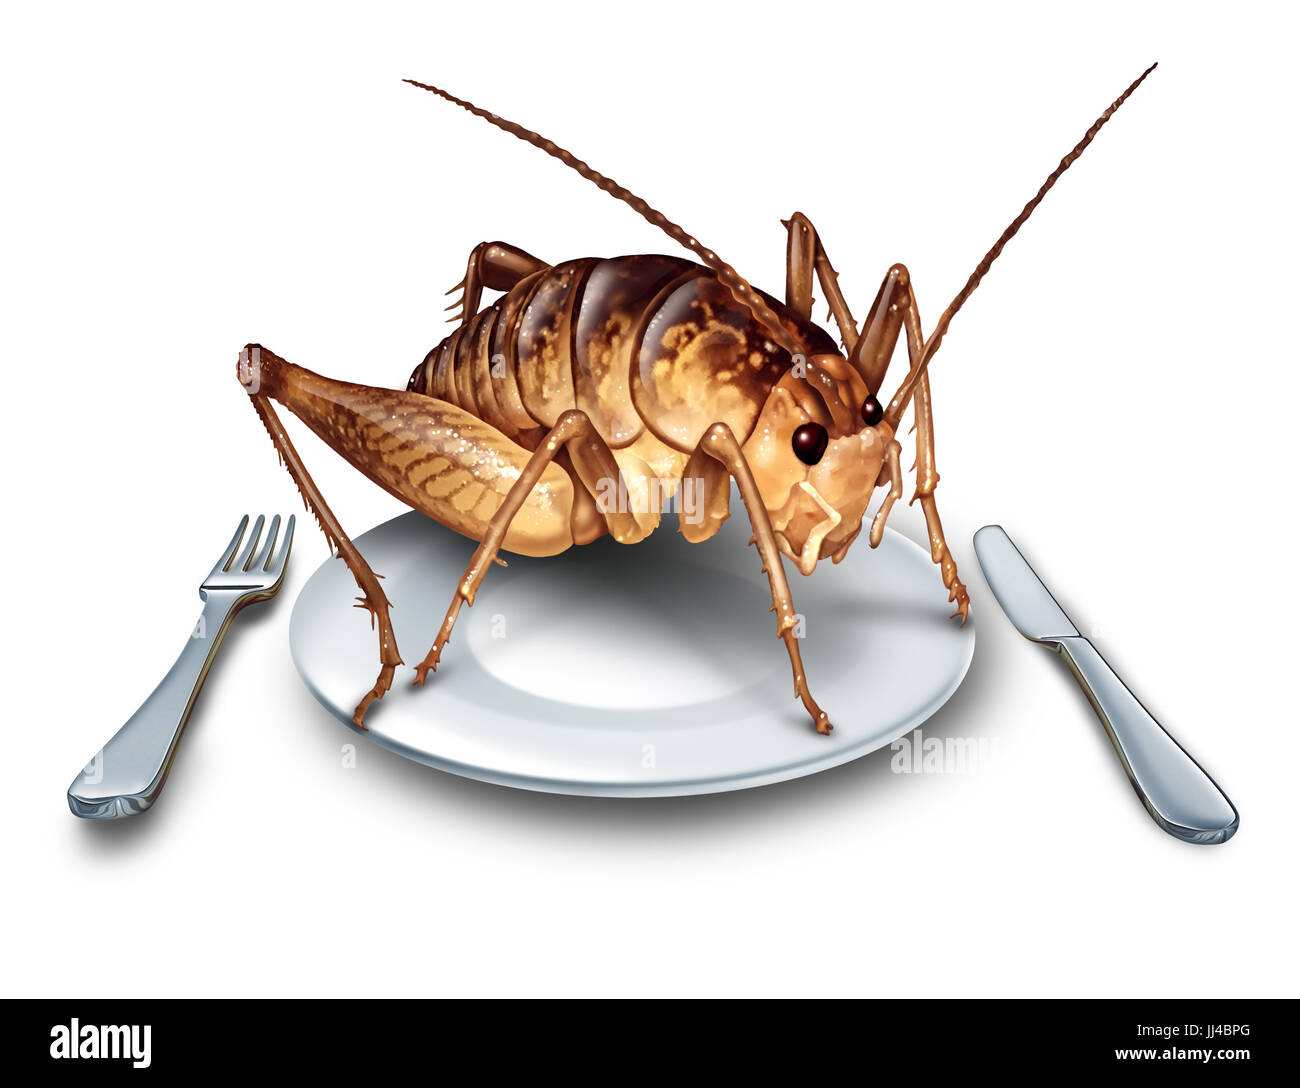 Essen Sie Bugs und essen Insekten als exotische Küche und alternative proteinreiche Ernährung essen als ein Cricket-Insekt in einen Teller mit Messer und Gabel. Stockfoto